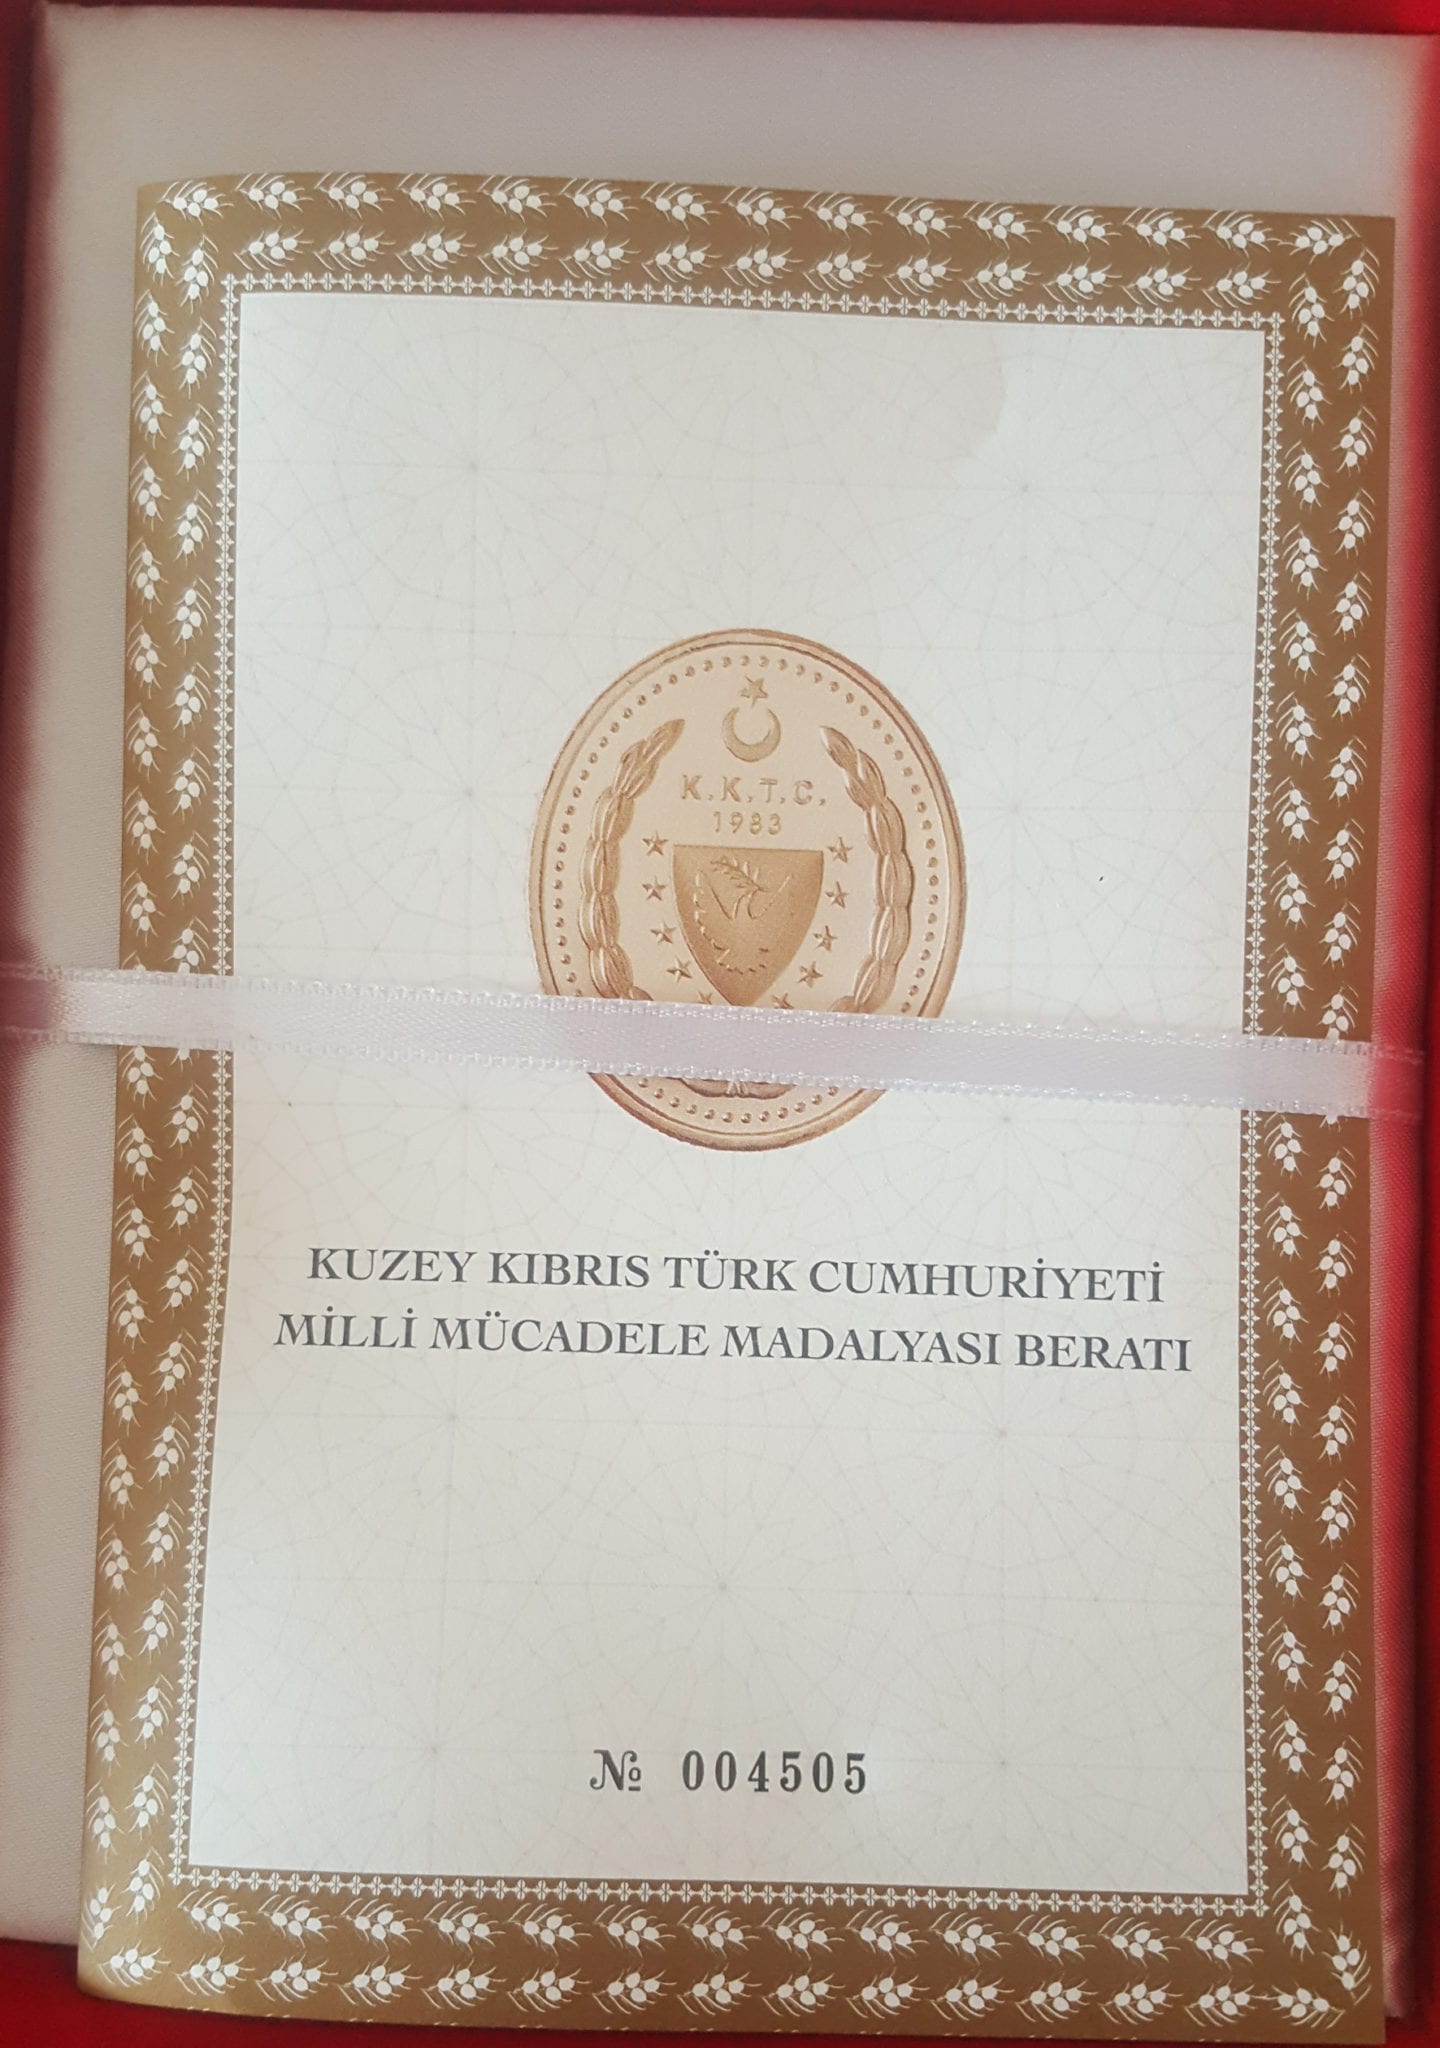 KKTC Milli Mücadele Madalyası … Prof. Dr. Ata ATUN